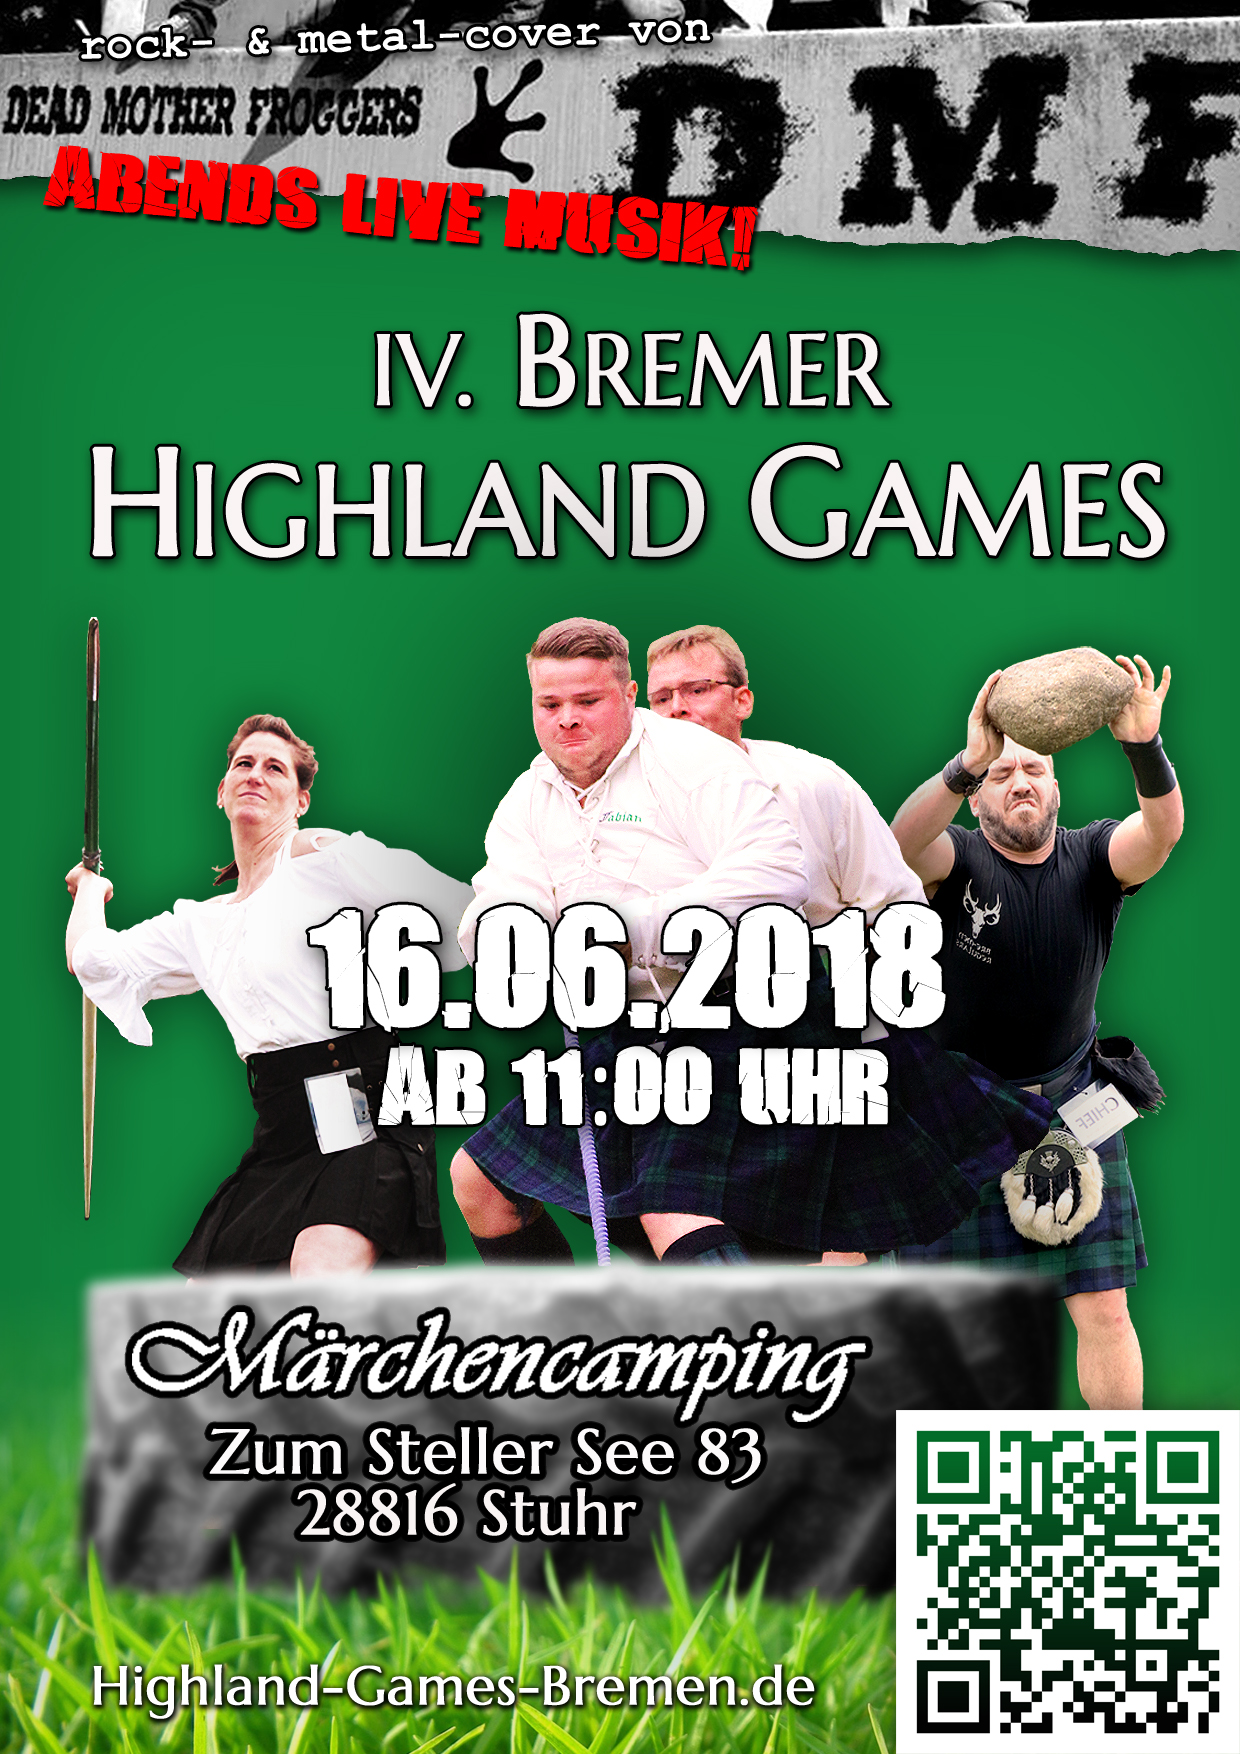 Highland Games Bremen Flyer Front